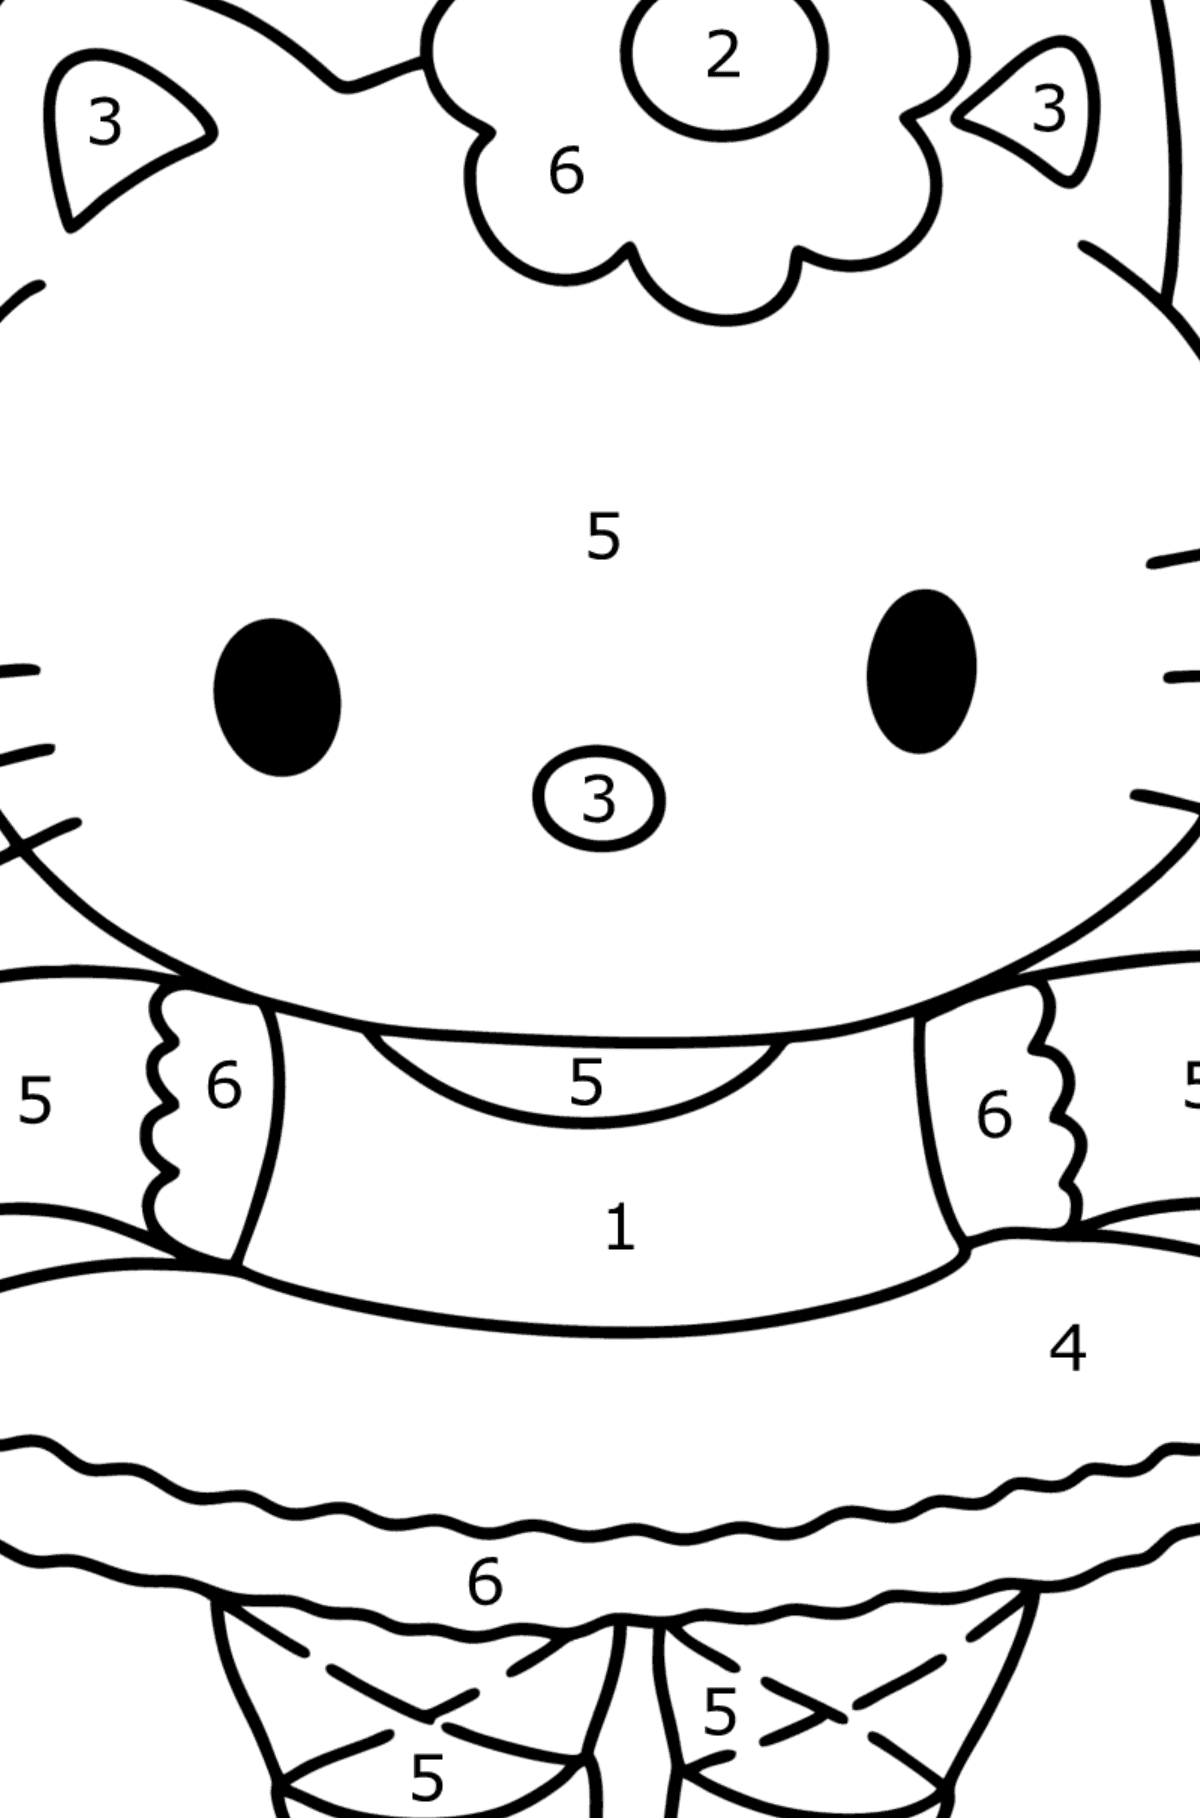 Boyama sayfası Hello Kitty balerin - Sayılarla Boyama çocuklar için